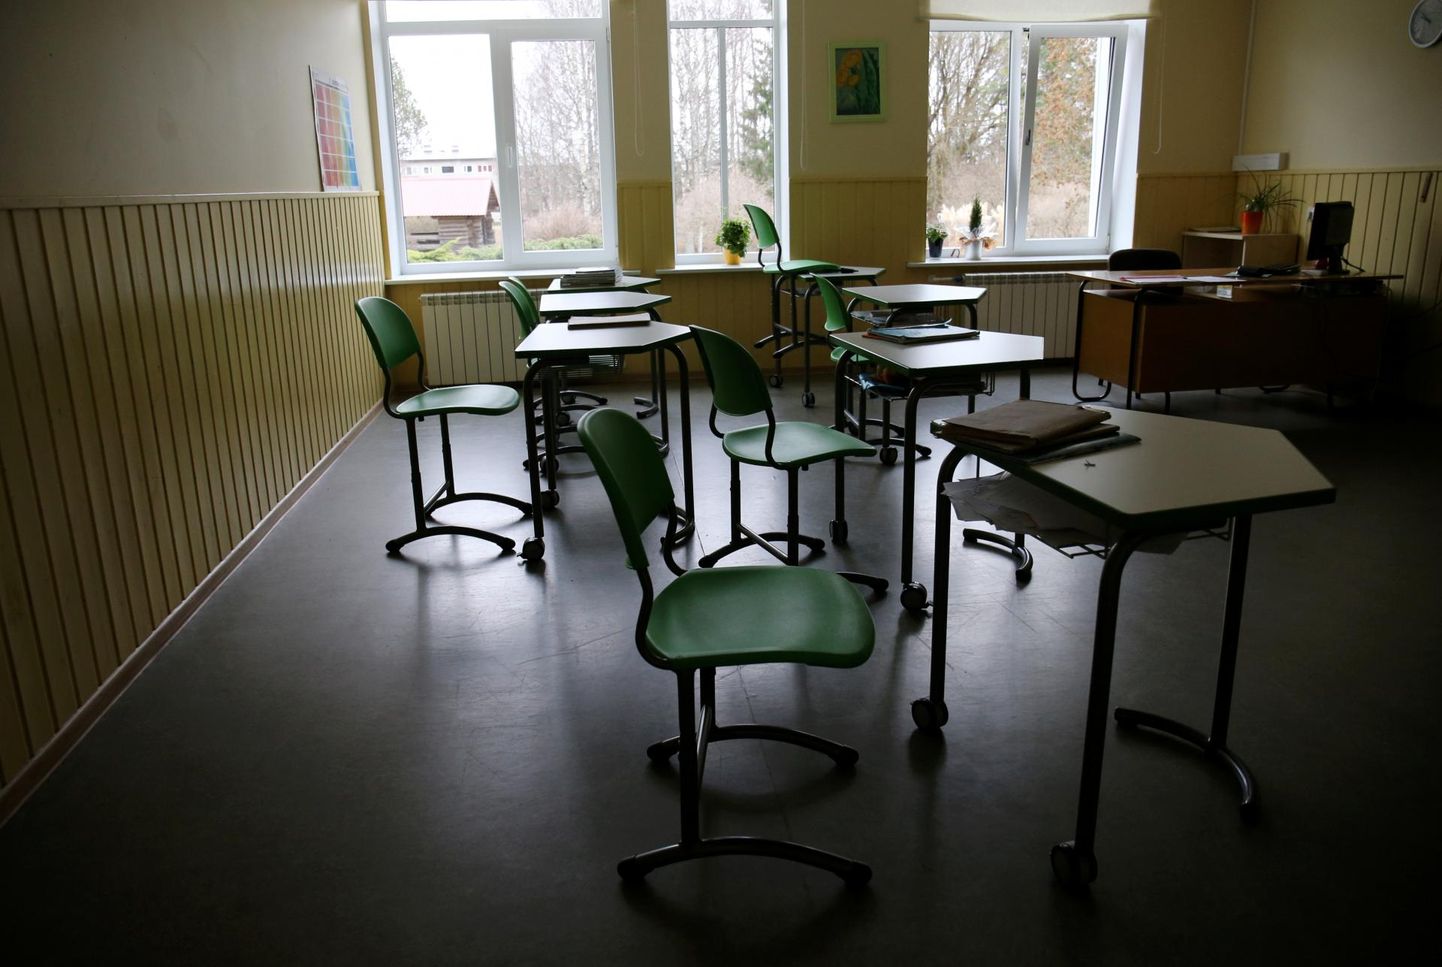 Reedel peatavad streikijad Eesti mitmetes koolides ja lasteaaedades tunniks töö. Pilt on illustreeriv.